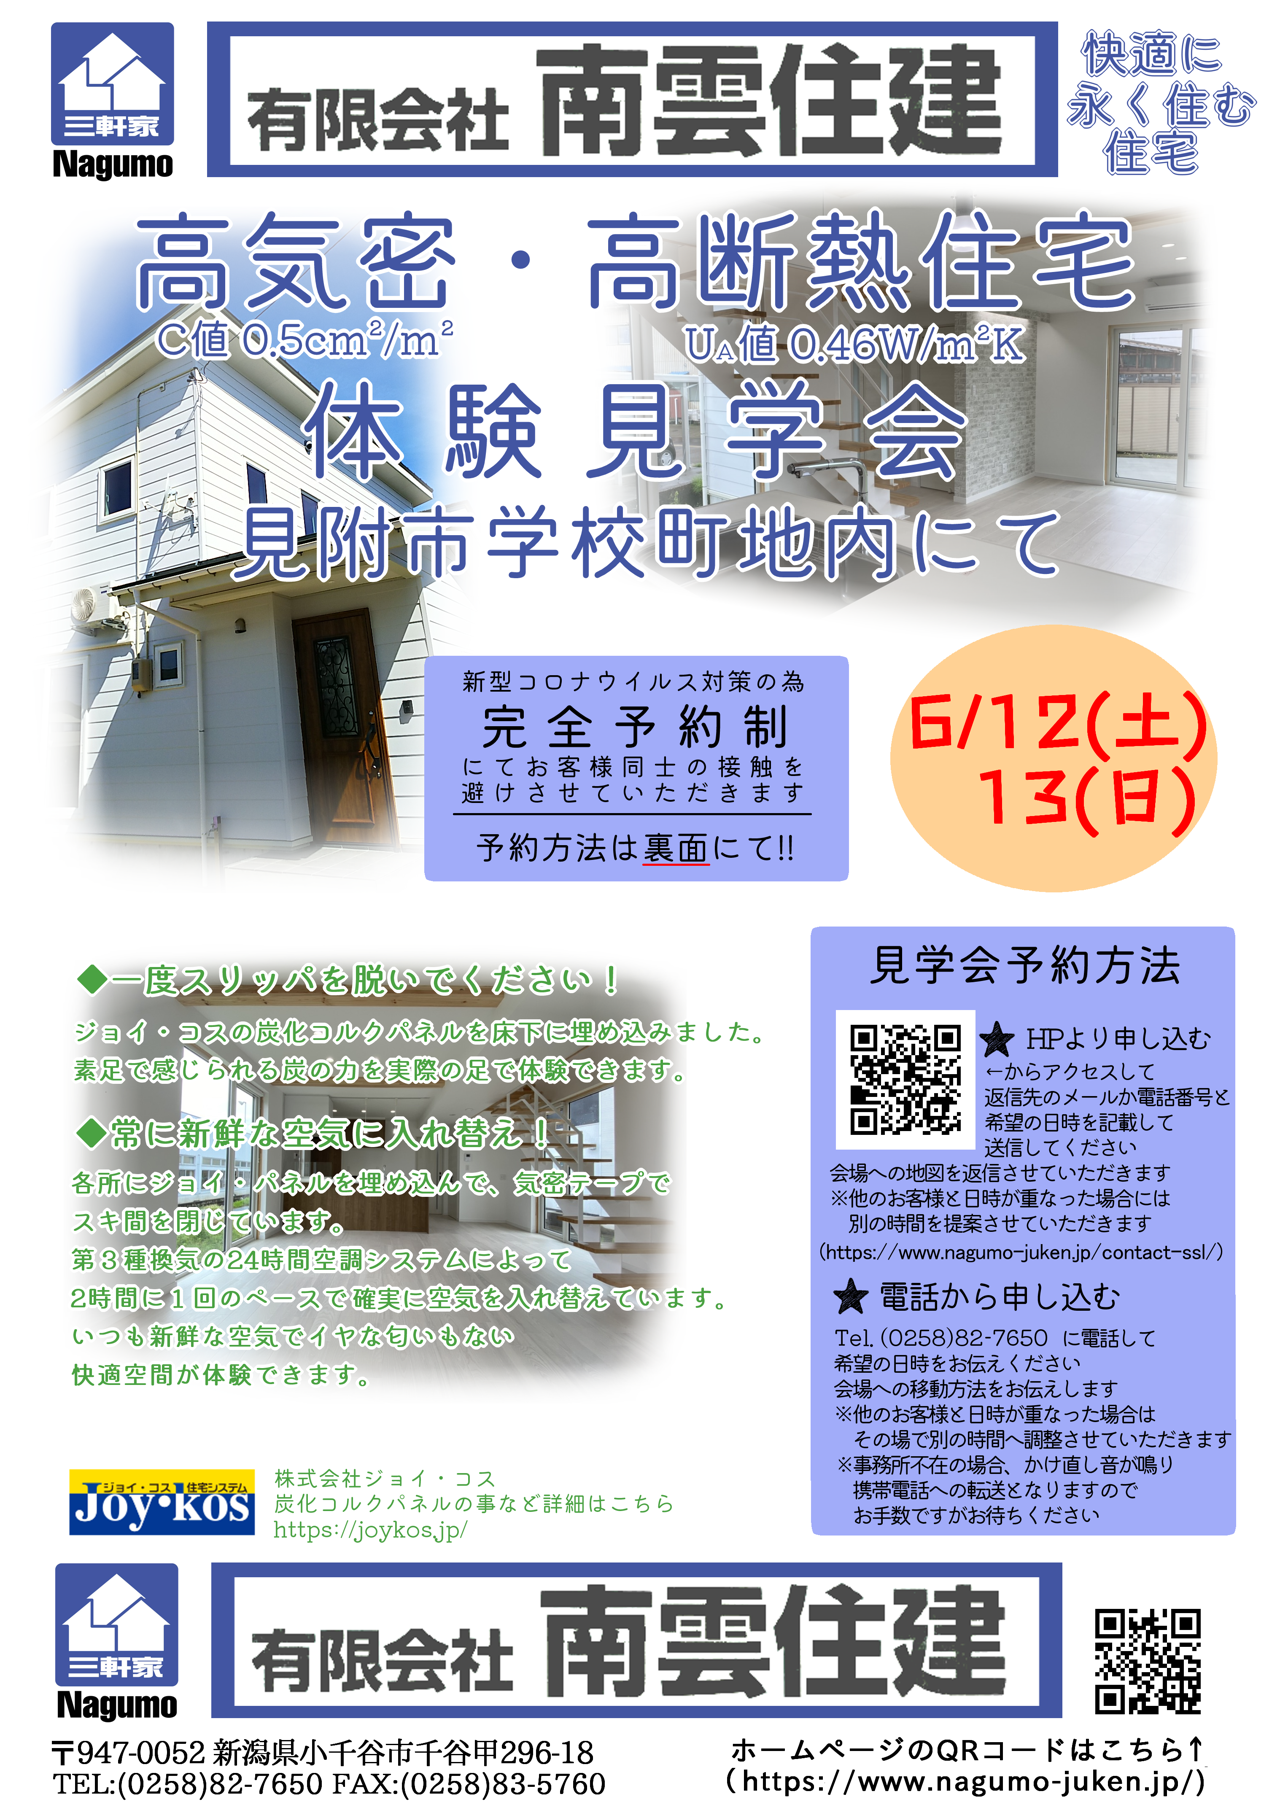 https://www.nagumo-juken.jp/diaryblog/images/tirasi-0521-online.png